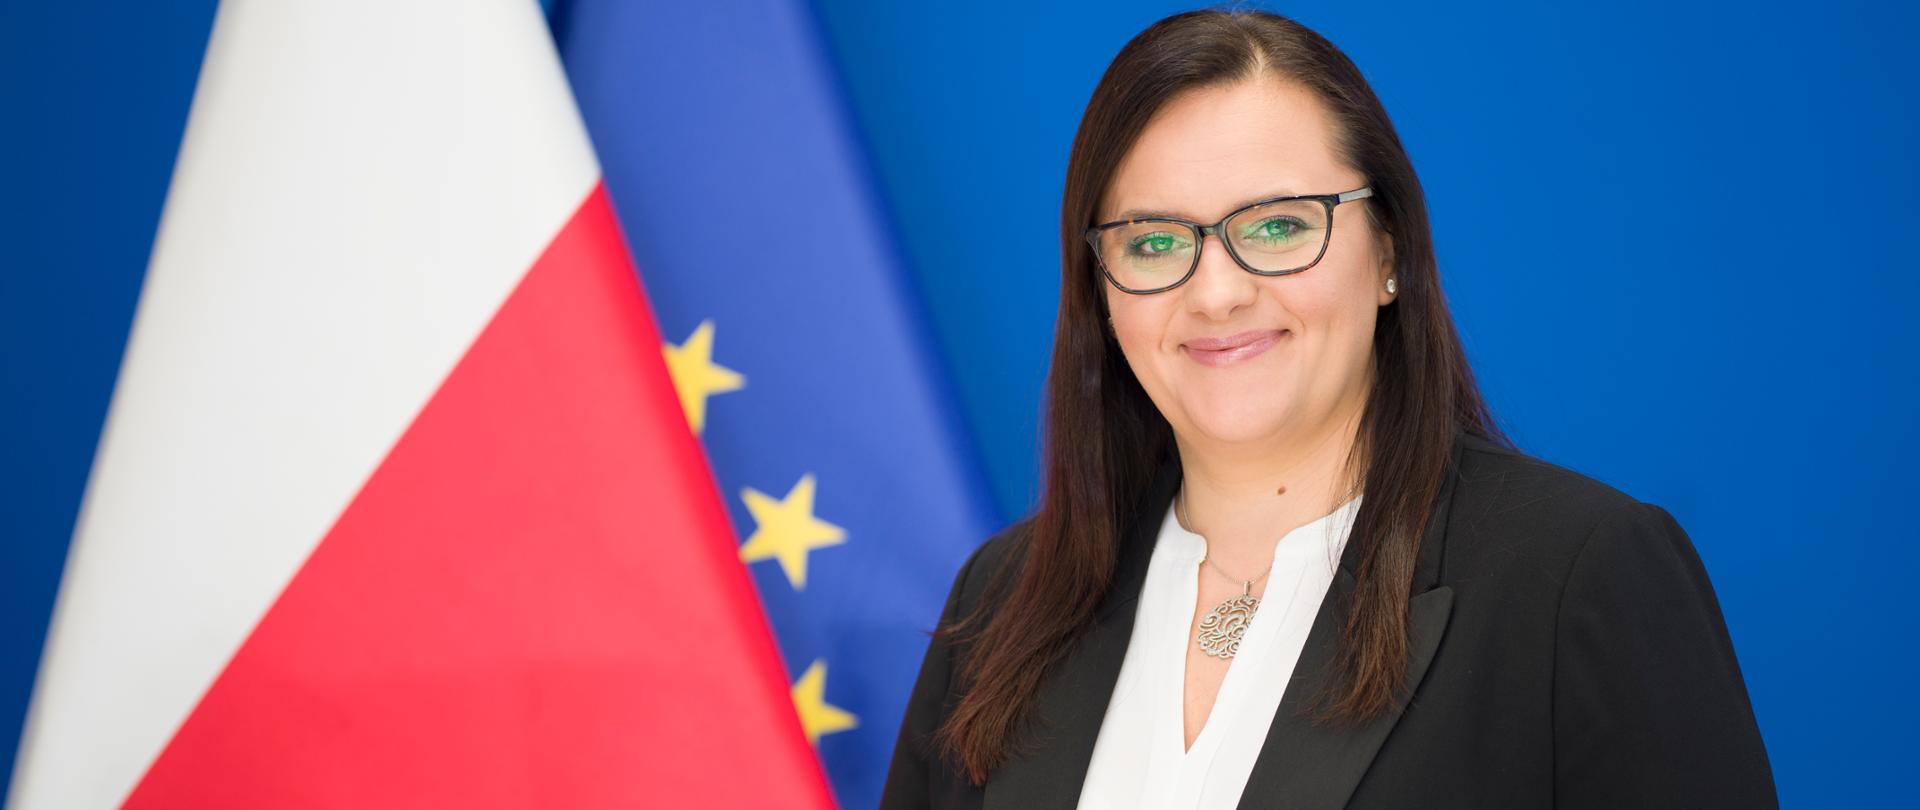 Na zdjęciu minister funduszy i polityki regionalnej Małgorzata Jarosińska-Jedynak stoi obok flag PL i UE